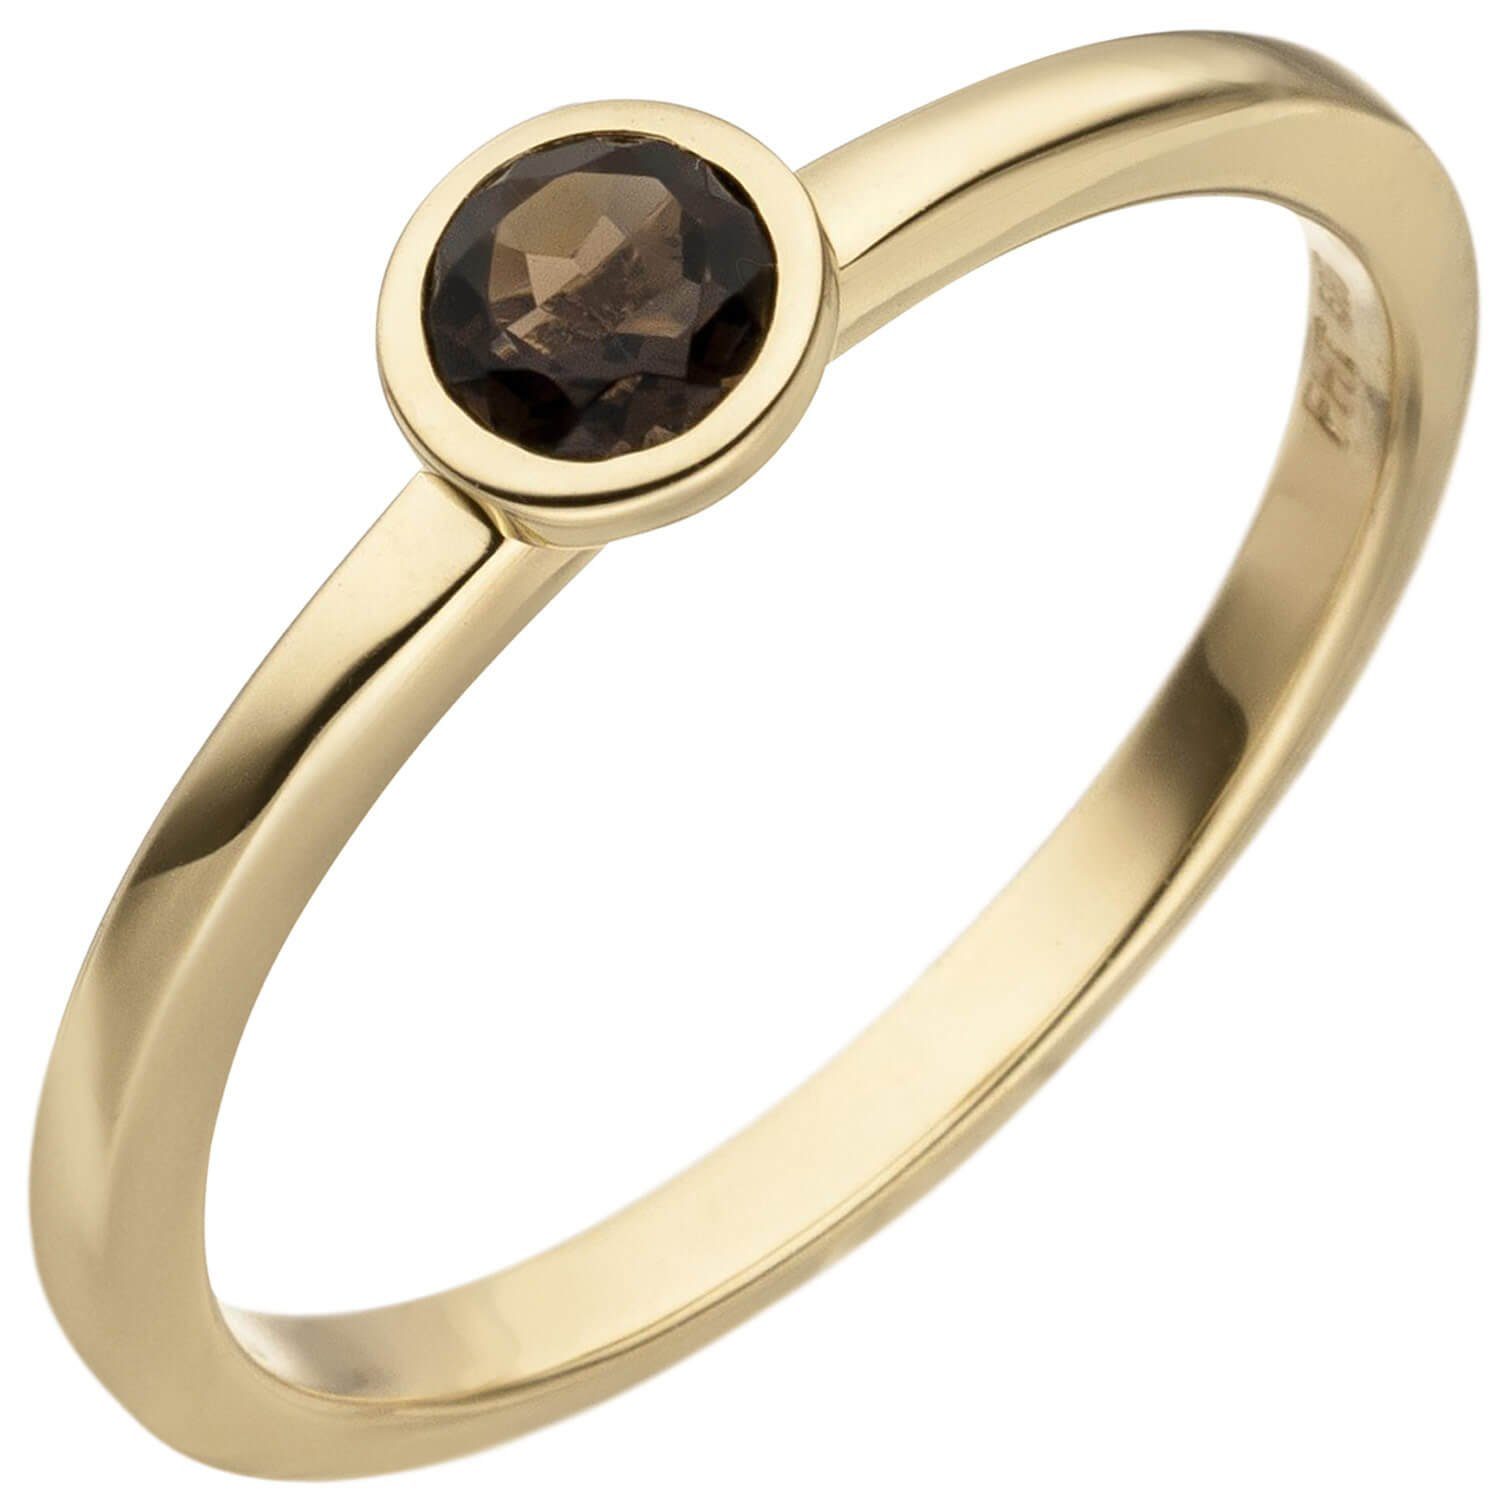 Schmuck Krone Fingerring Ring Solitär Damenring mit Rauchquarz, facettiert rund, 585 Gold Gelbgold, Gold 585